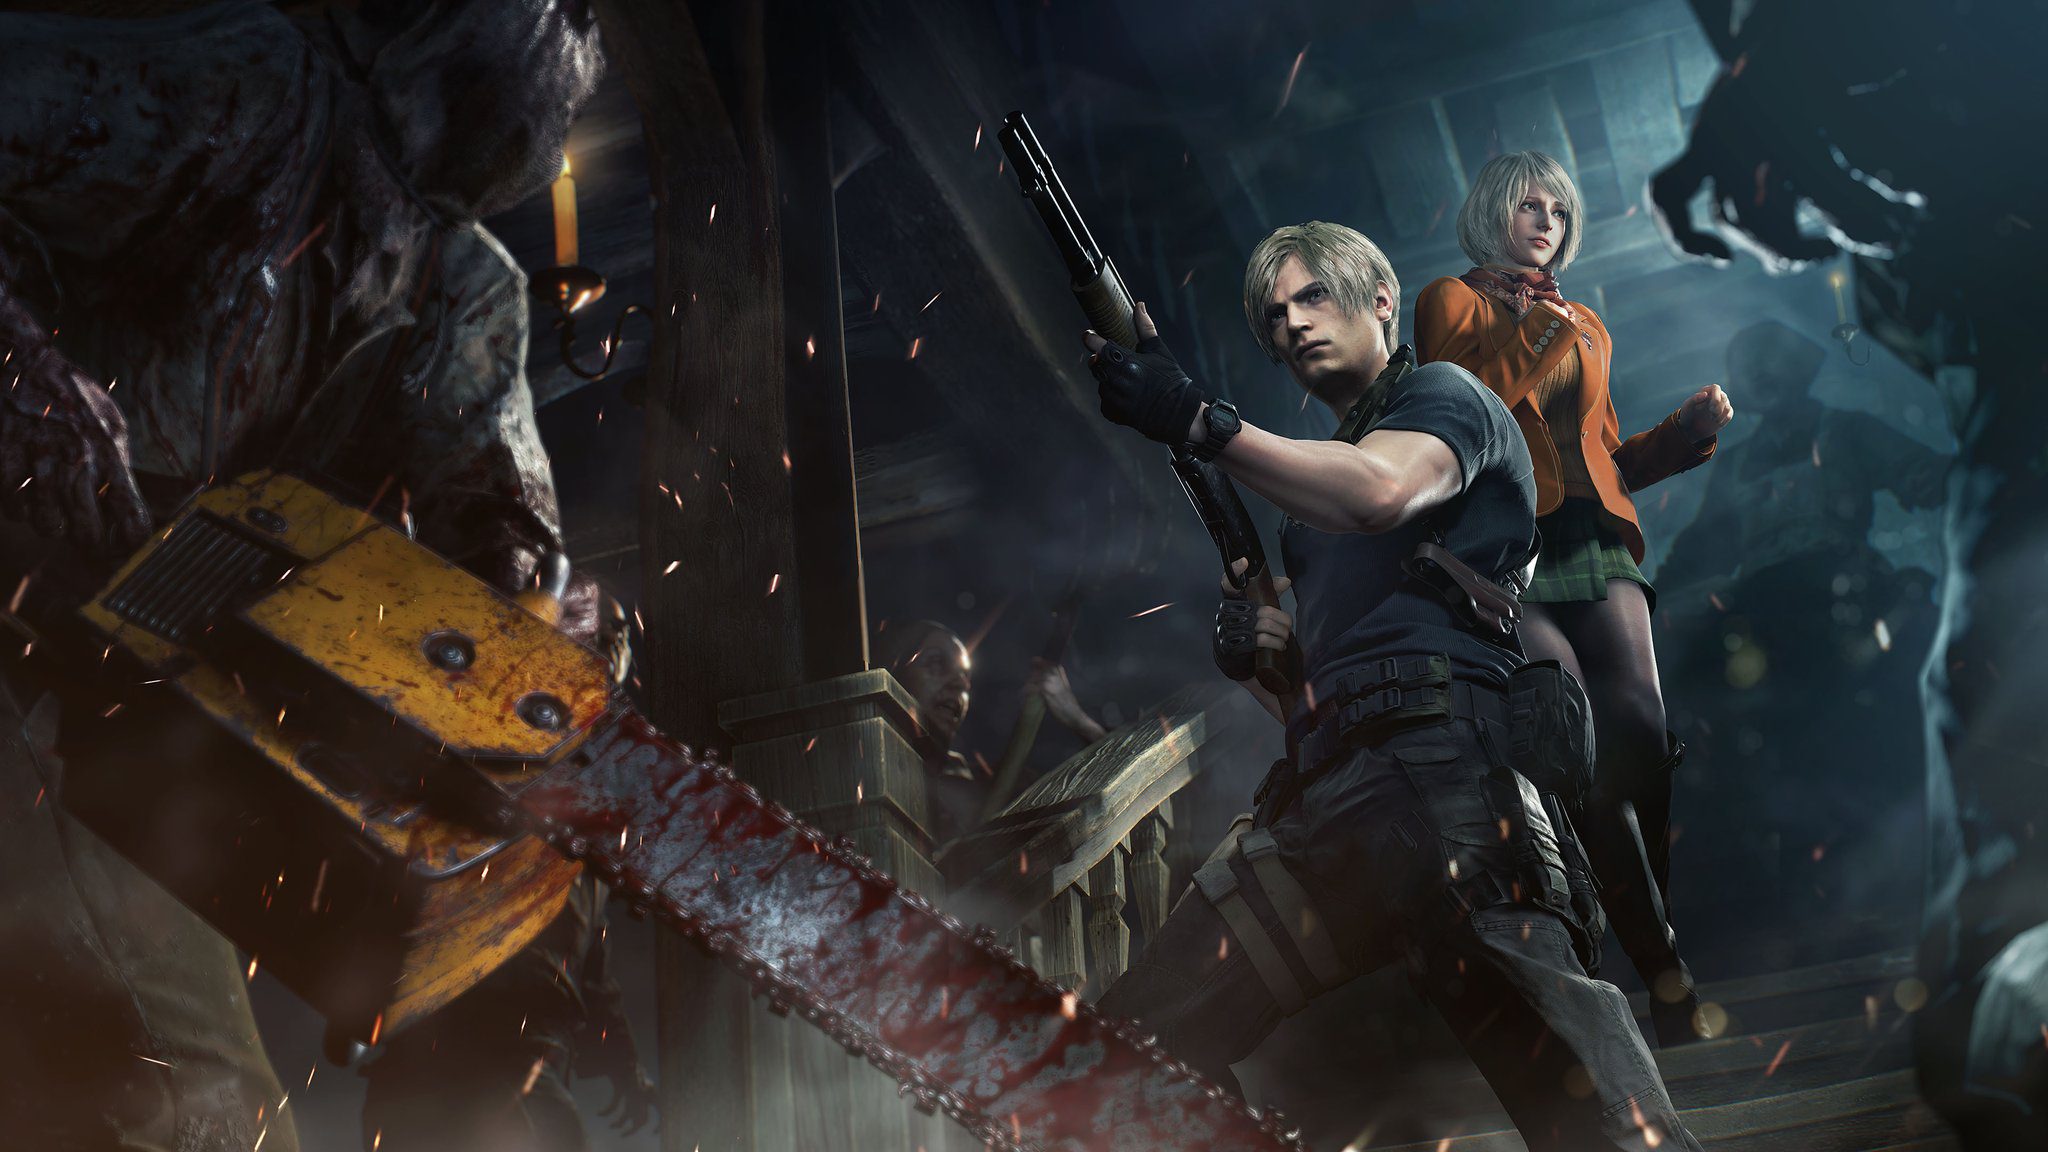 PS5: Resident Evil 4 Remake: comparan los gráficos entre consolas  PlayStation y así es cómo se ve el juego